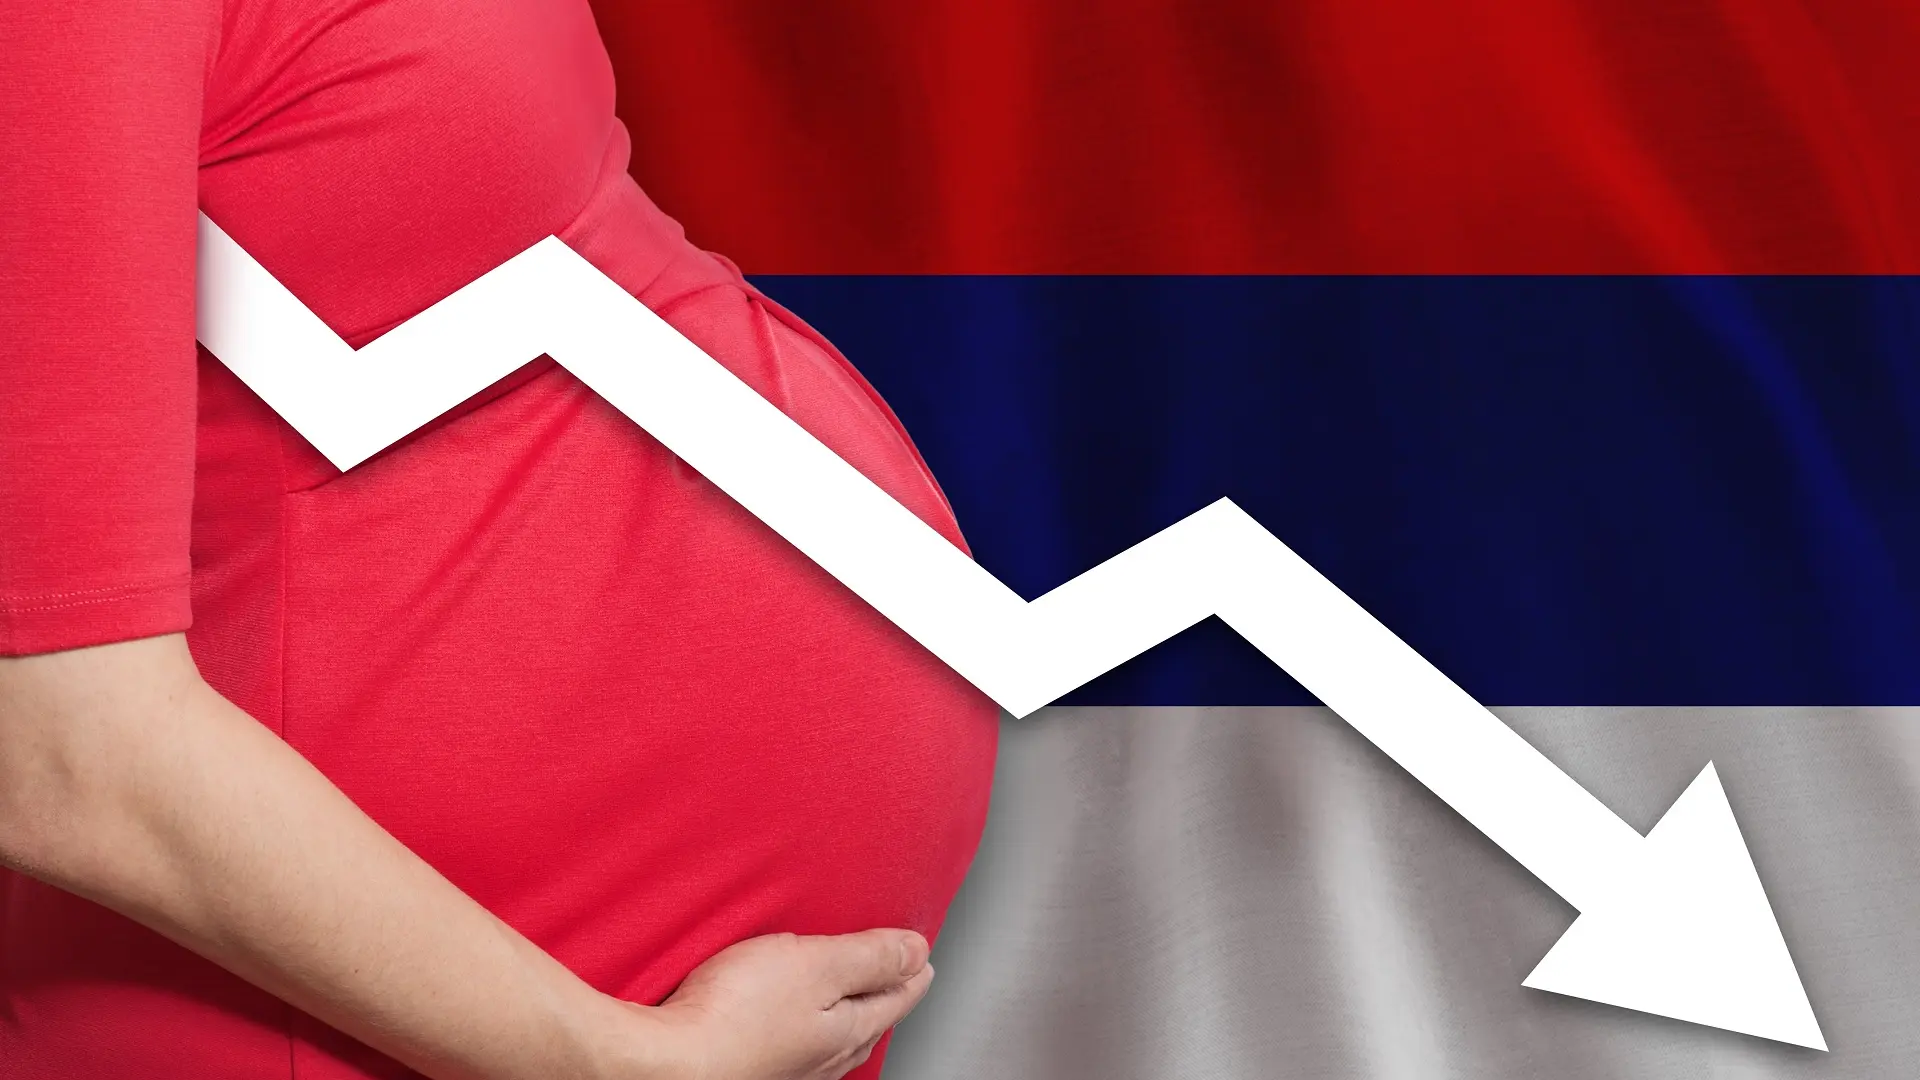 demografija, demografska slika u srbiji, srbija, broj rođenih, beba, bebe, trudnoća - shutterstock-662a50d8d6def.webp